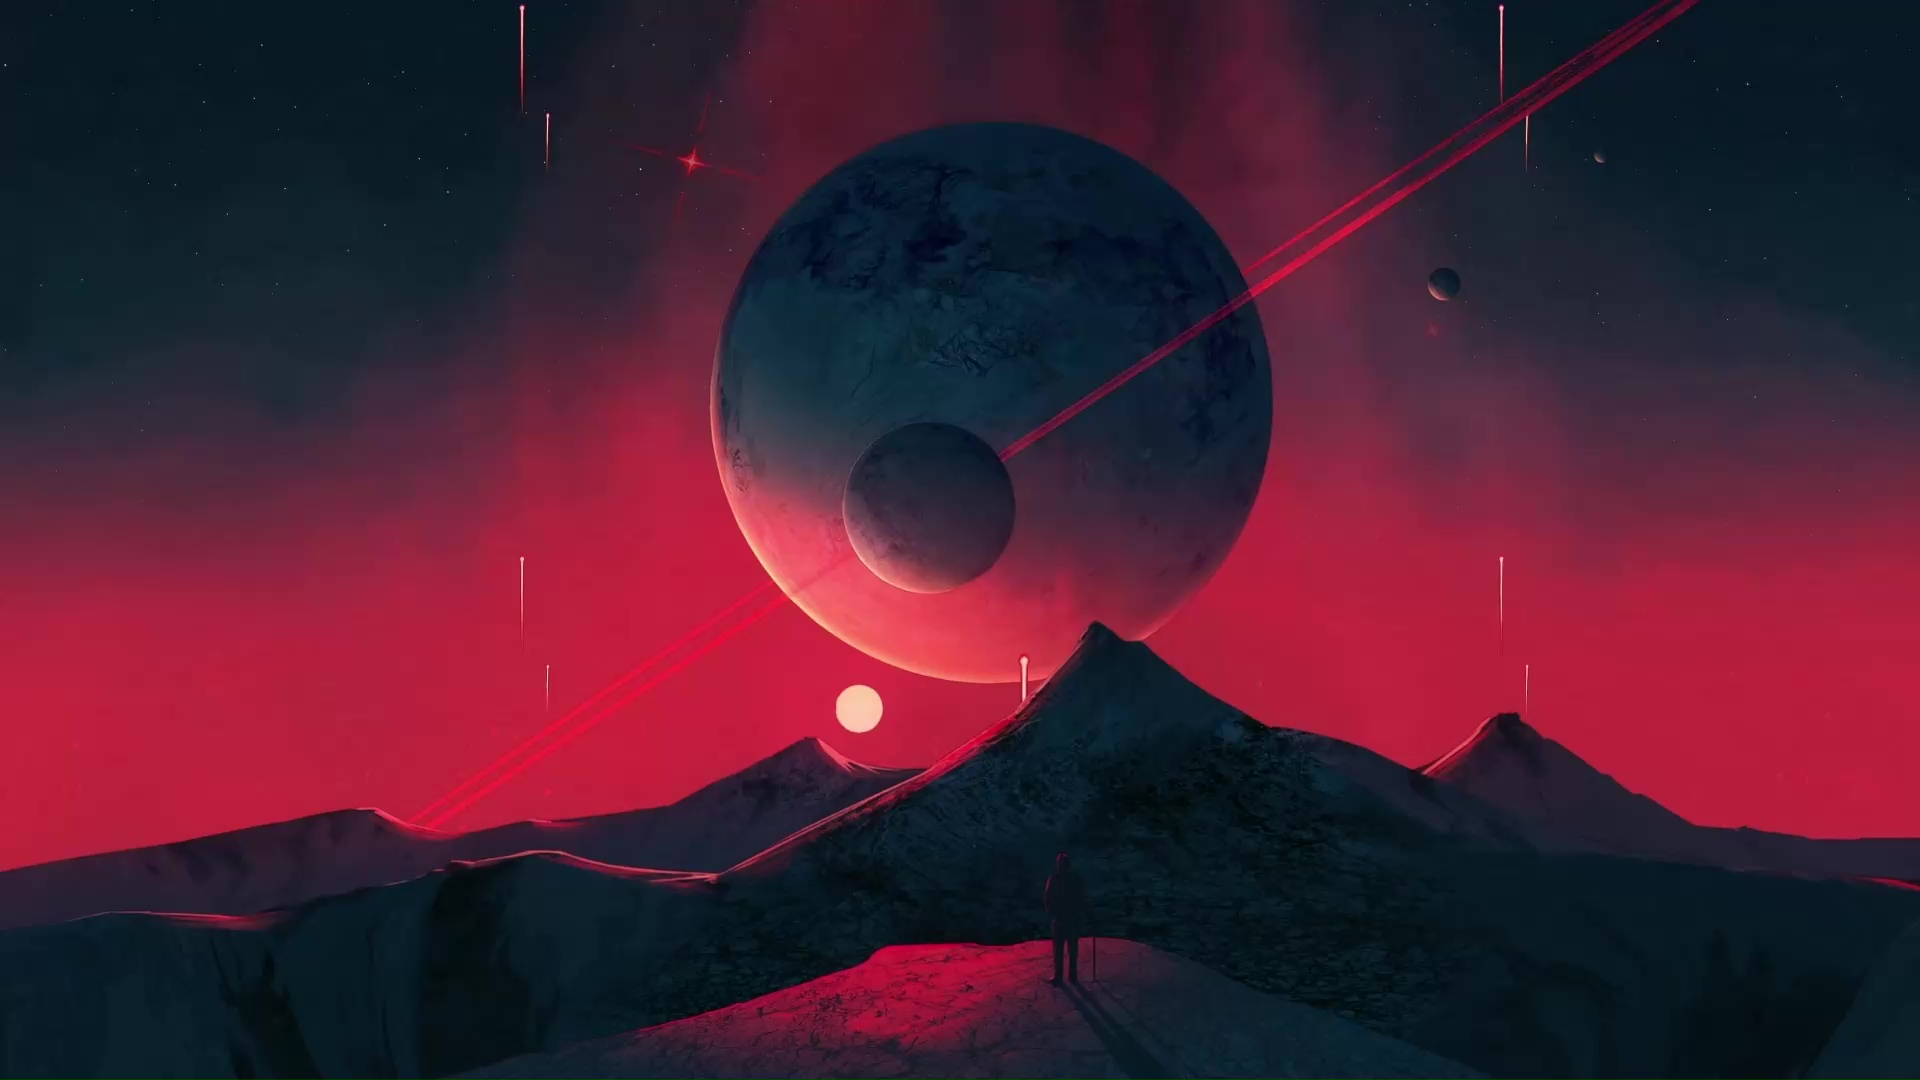 Bạn có muốn có một hình nền sống động với hành tinh đỏ đêm núi rừng? Hình ảnh này sẽ đưa bạn về một thế giới khác đầy màu sắc và sống động. Chúng tôi có thể đảm bảo rằng, khi bạn đặt hình nền này trên điện thoại hay máy tính của mình, bạn sẽ cảm thấy thật sự hài lòng!